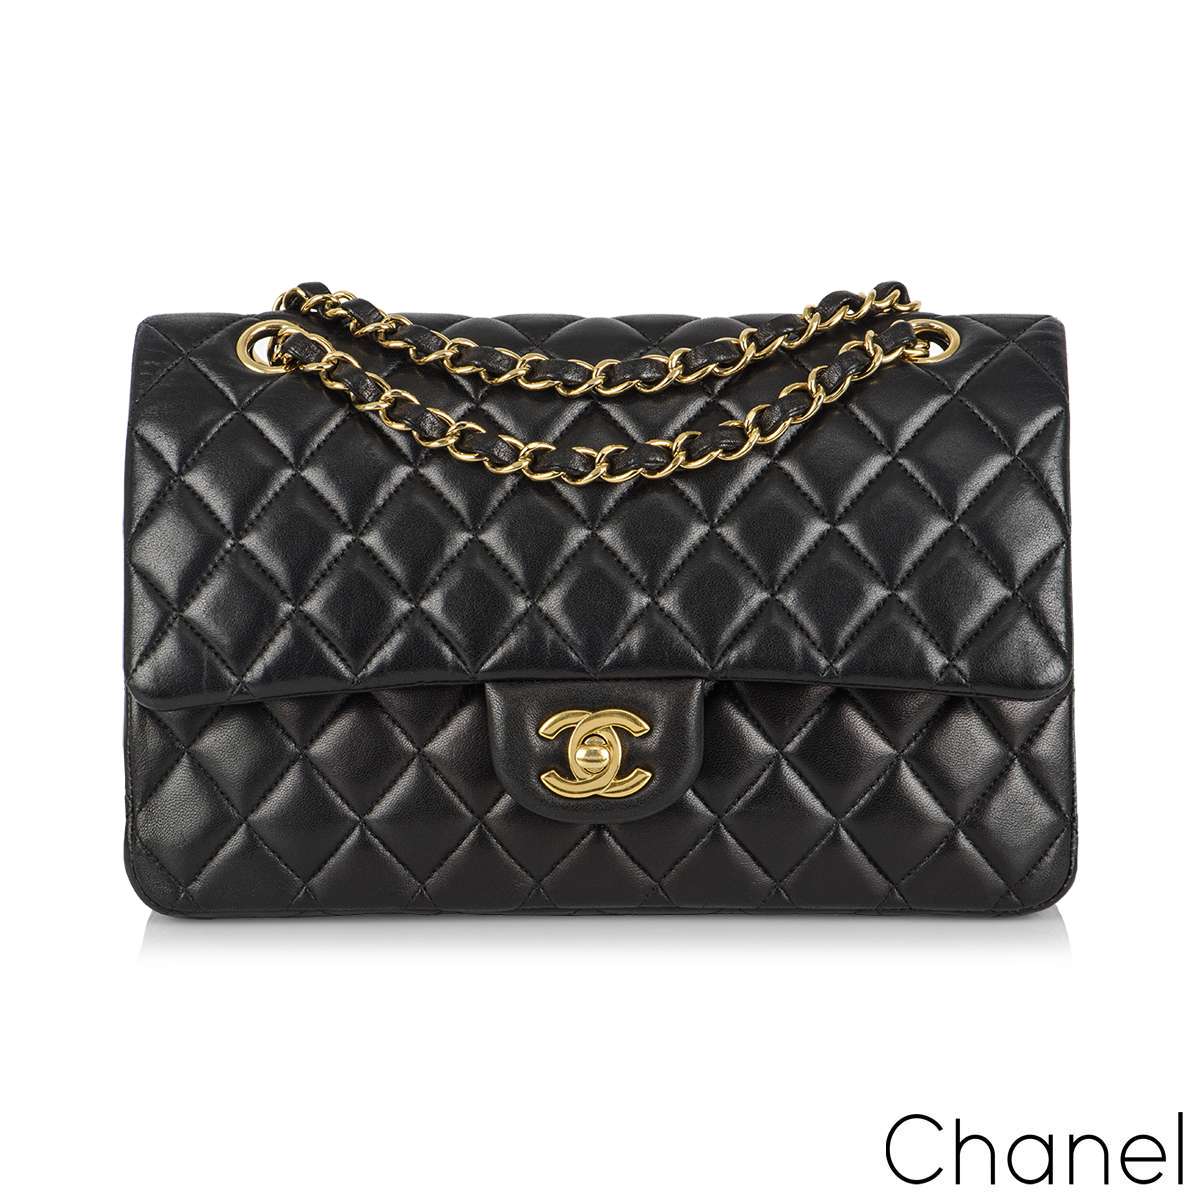 Chanel Medium Classic Burgundy GHW